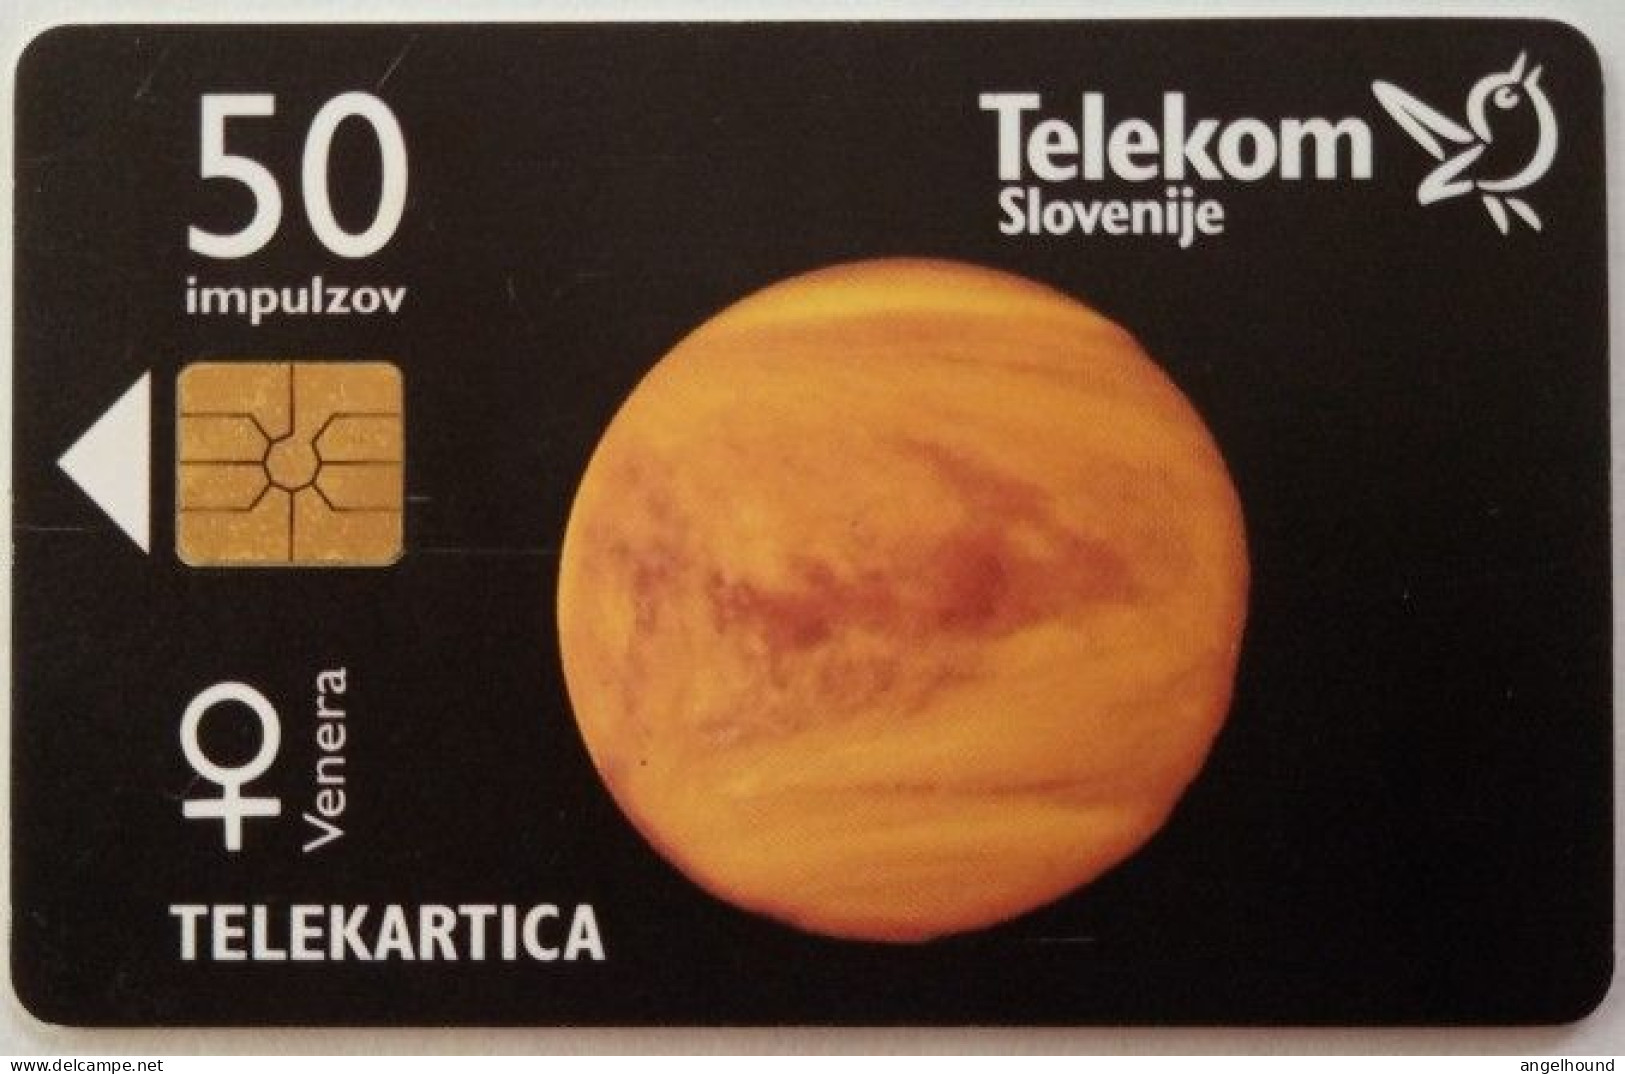 Slovenia 50 Units Chip Card - Venera / Nikoni  Ni Prepozno - Slovenia